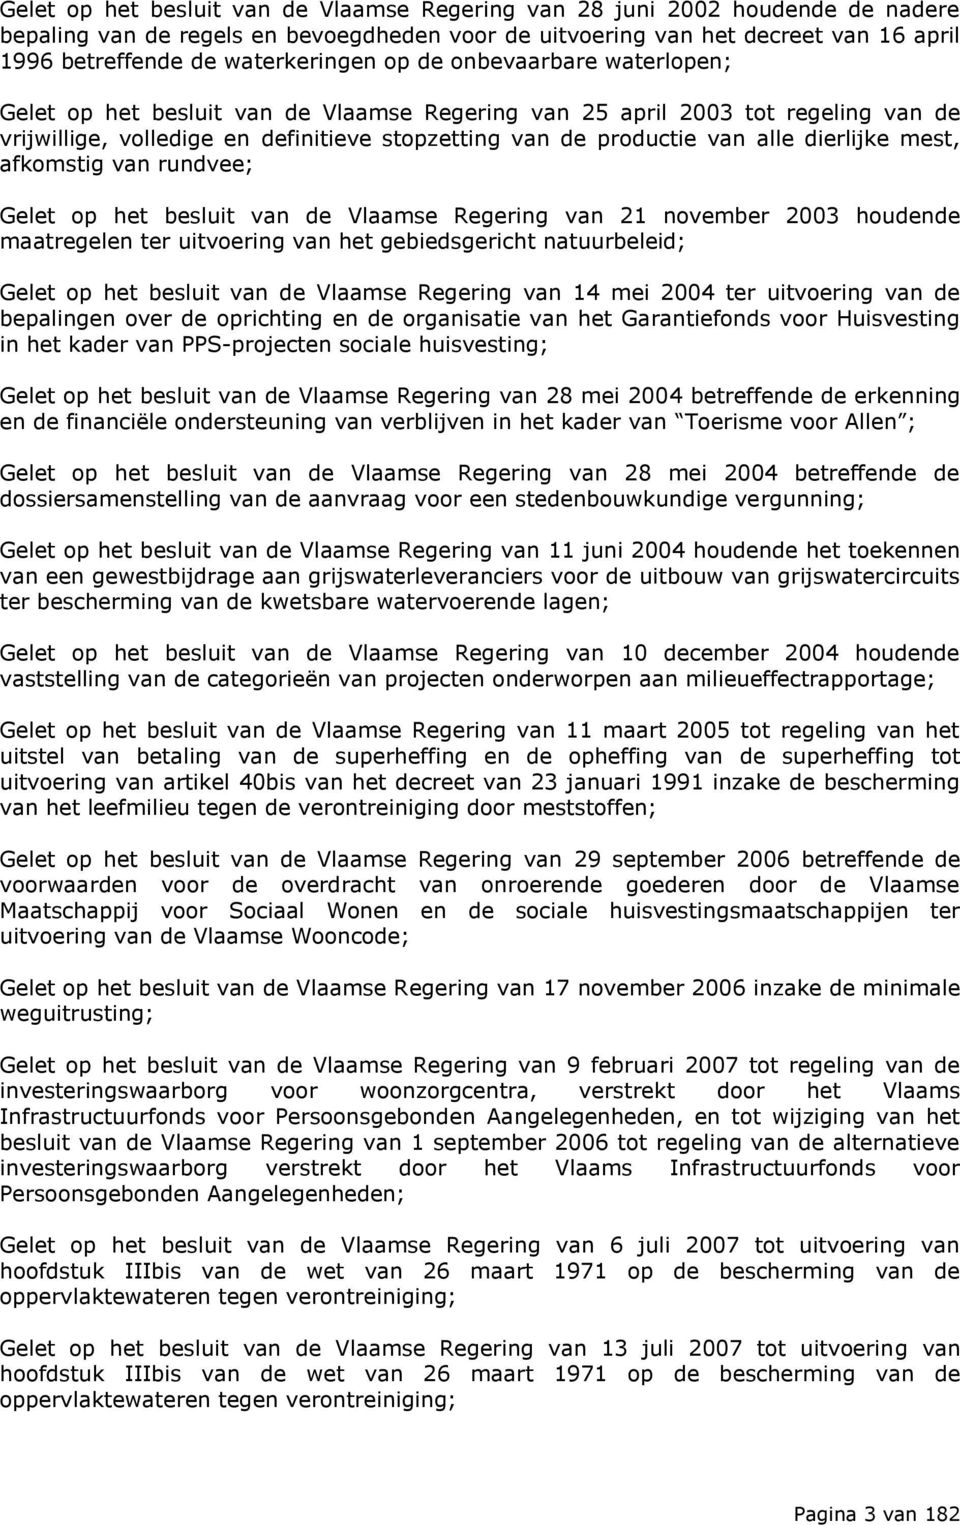 alle dierlijke mest, afkomstig van rundvee; Gelet op het besluit van de Vlaamse Regering van 21 november 2003 houdende maatregelen ter uitvoering van het gebiedsgericht natuurbeleid; Gelet op het